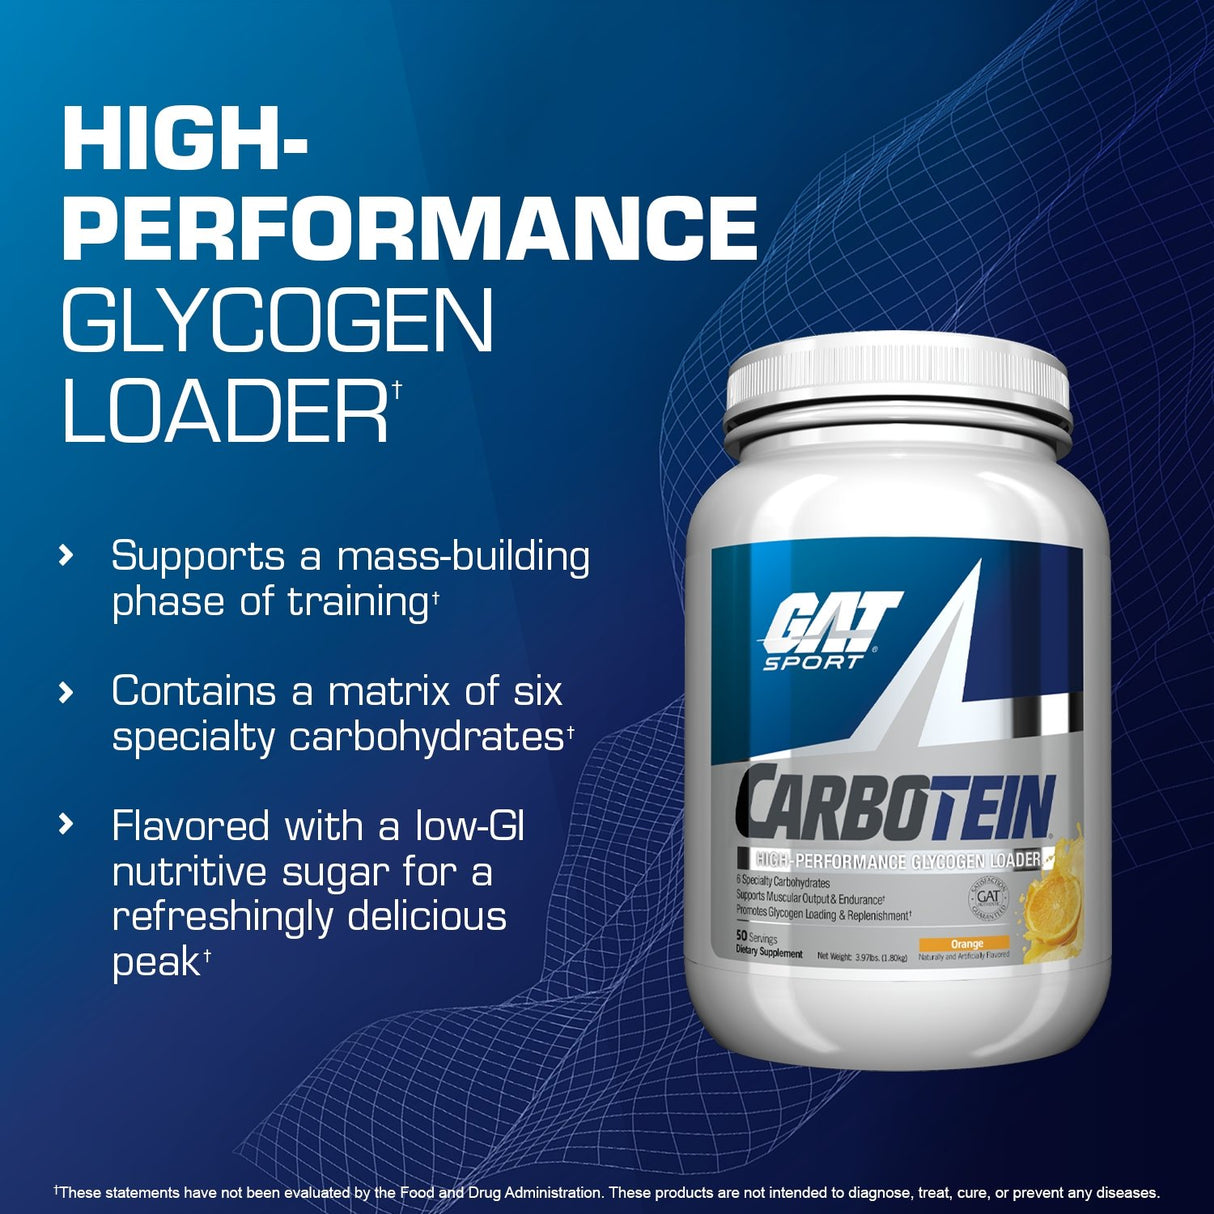 GAT SPORT CARBOTEIN - high performance glycogen loader